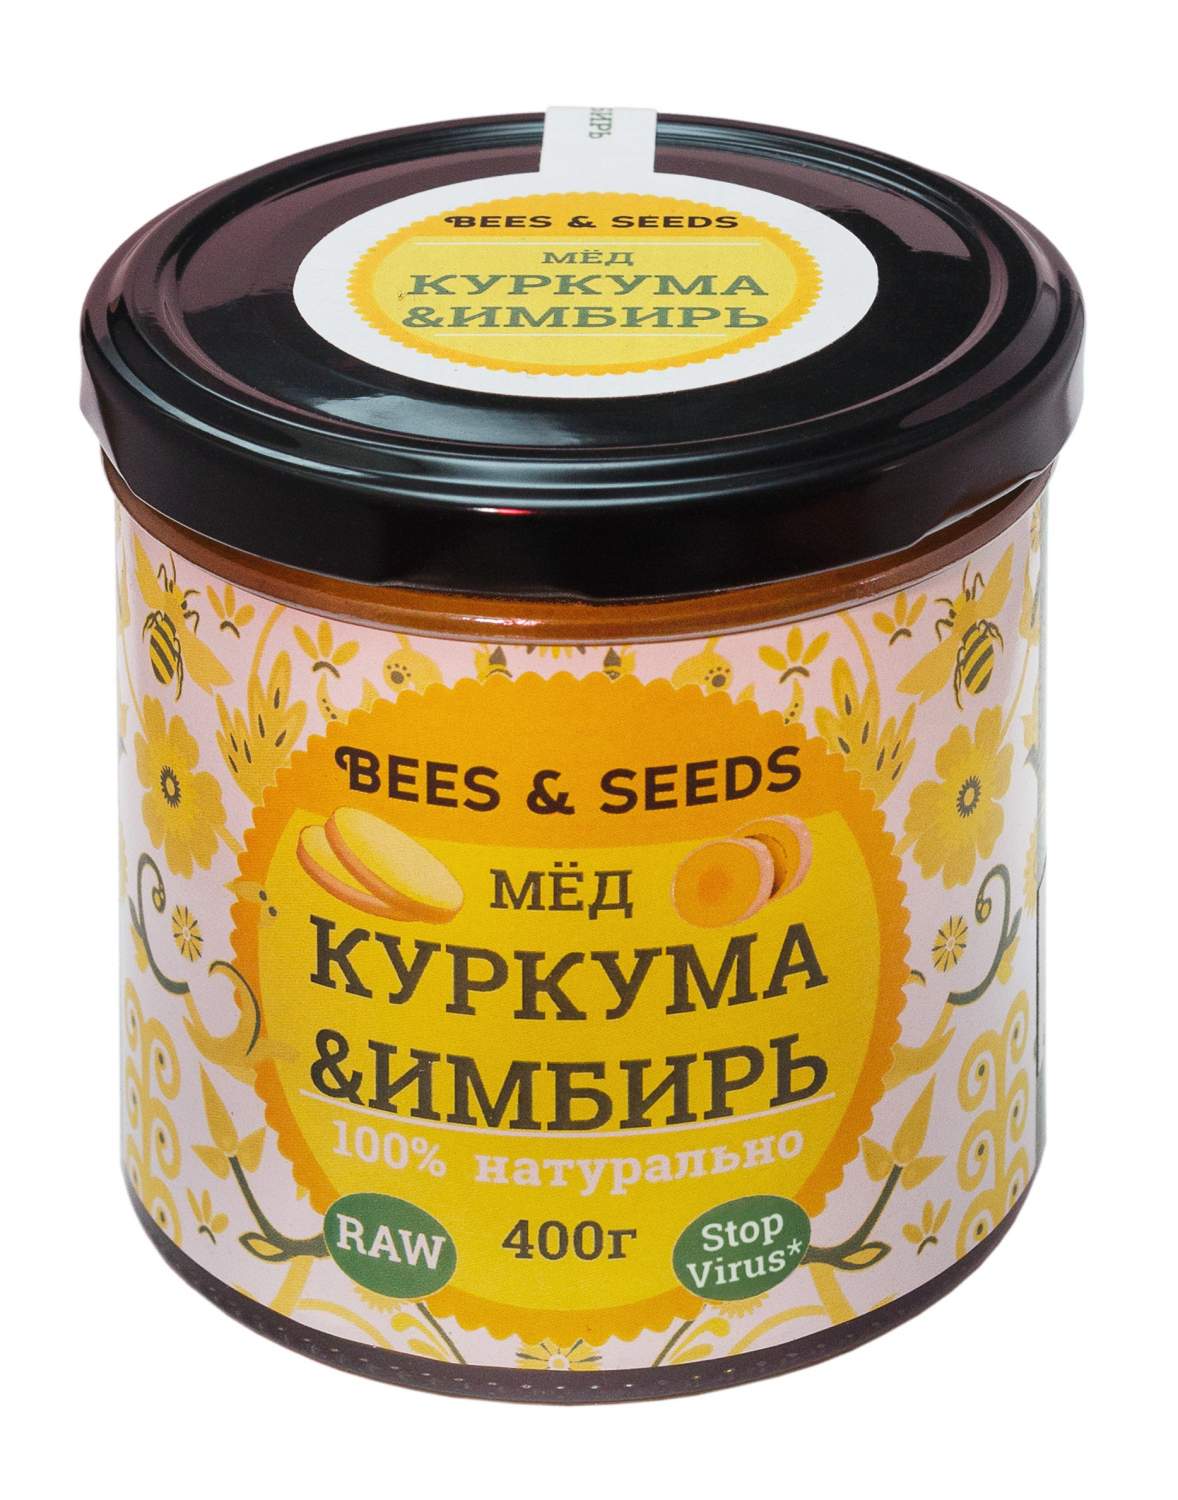 Купить медовый урбеч c куркумой и имбирём, Bees & Seeds, 400 г, цены на  Мегамаркет | Артикул: 600001986674